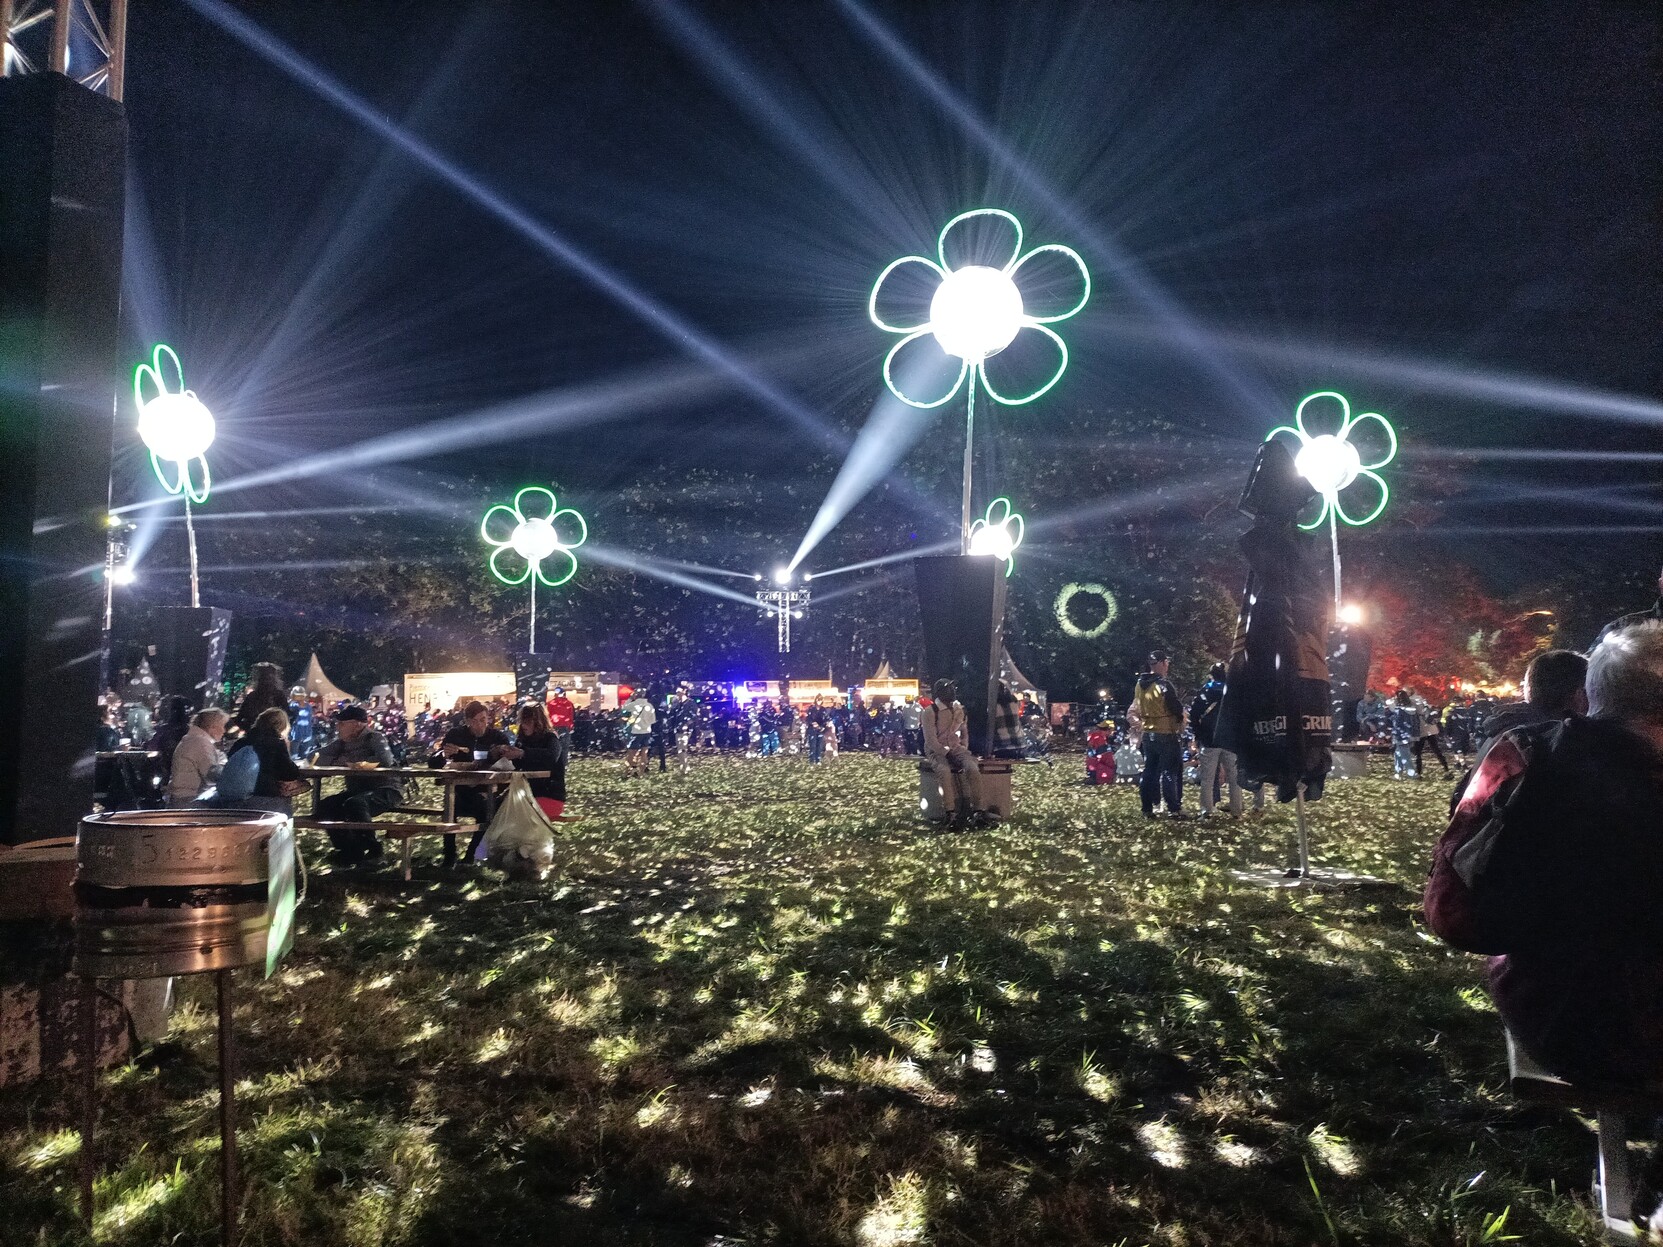 5 boules à facettes entourées de pétales pour faire des fleurs. Le sol de la prairie est jonché de paillettes de lumière, on voit le faisceau des projecteurs traverser la nuit.